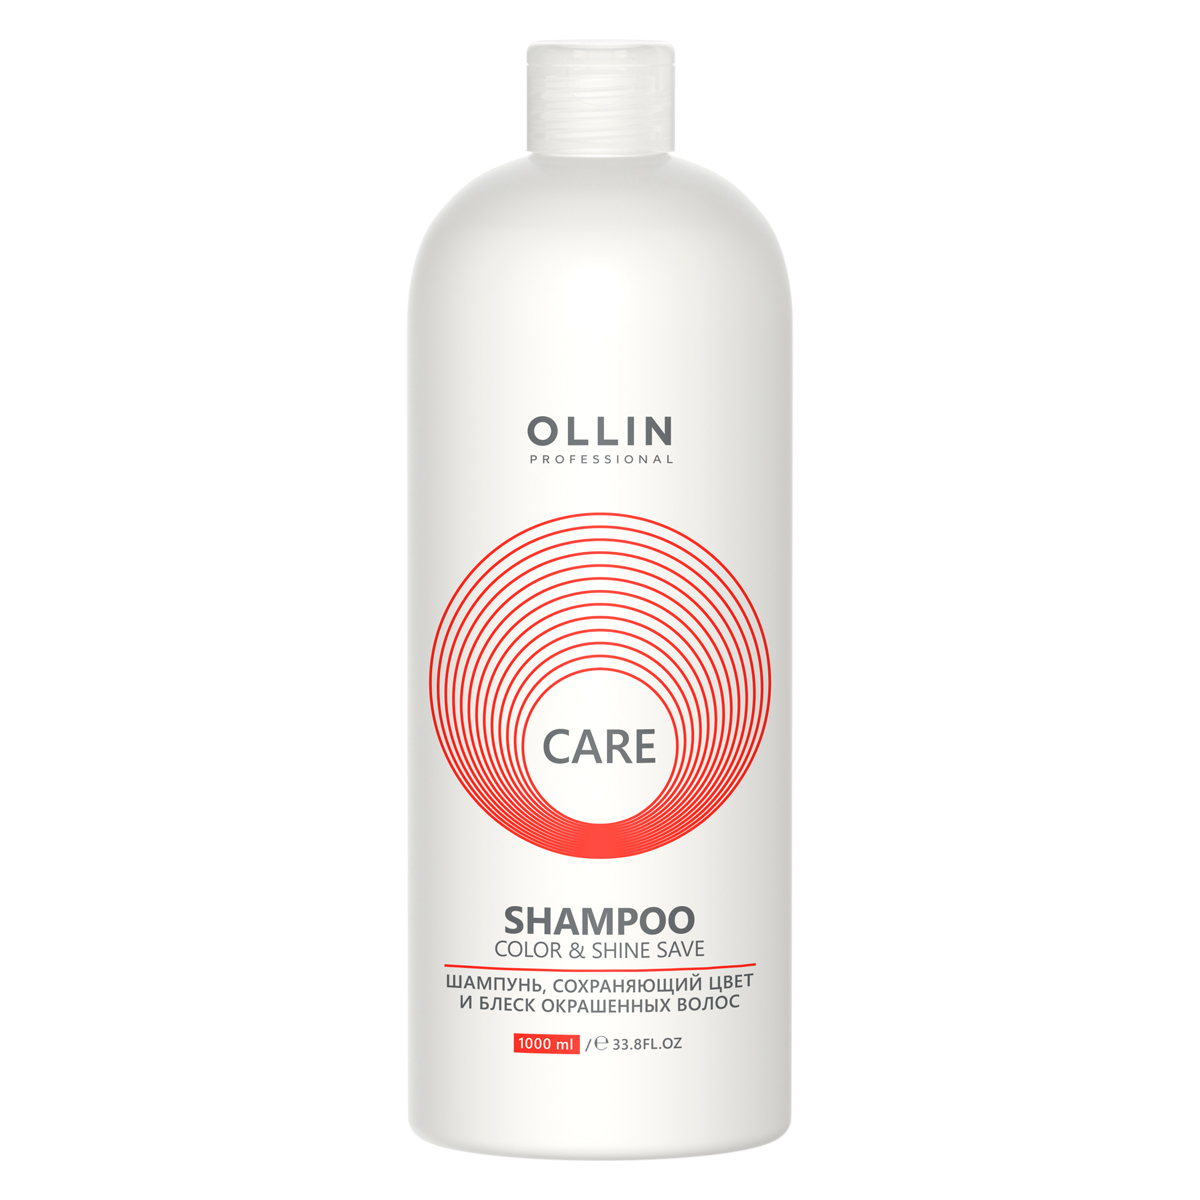 шампунь ollin professional care сохраняющий цвет и блеск окрашенных волос 1000 мл Ollin Professional Шампунь, сохраняющий цвет и блеск окрашенных волос, 1000 мл (Ollin Professional, Care)